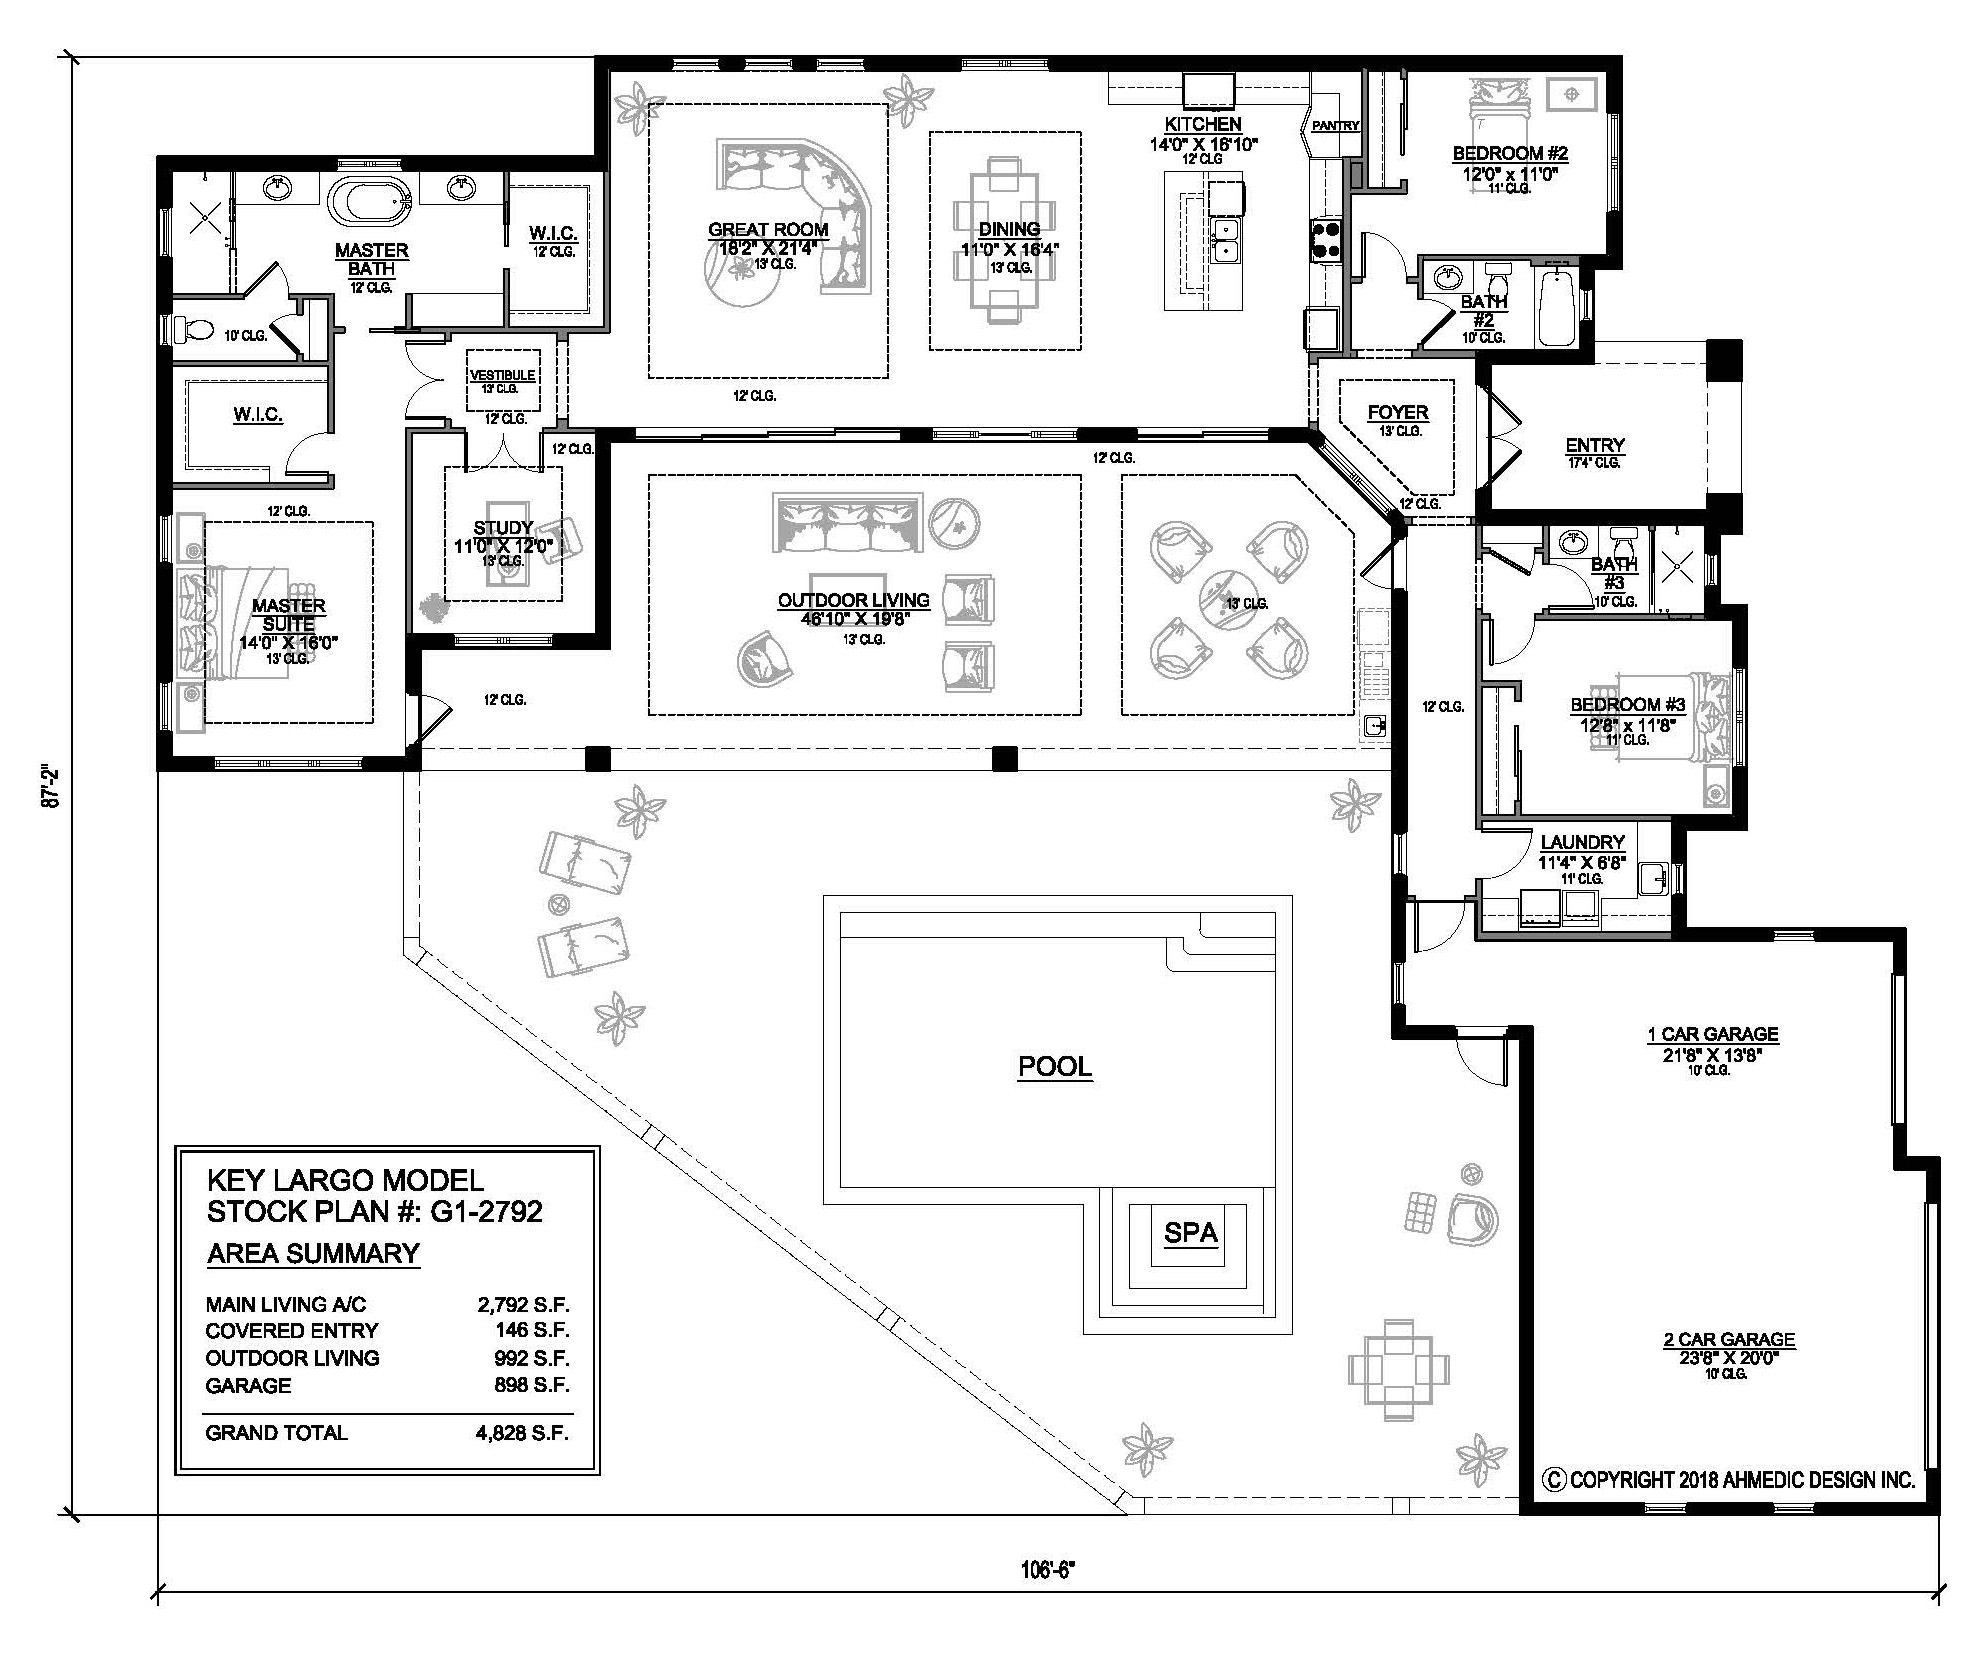 G1-2792 Floor Plan